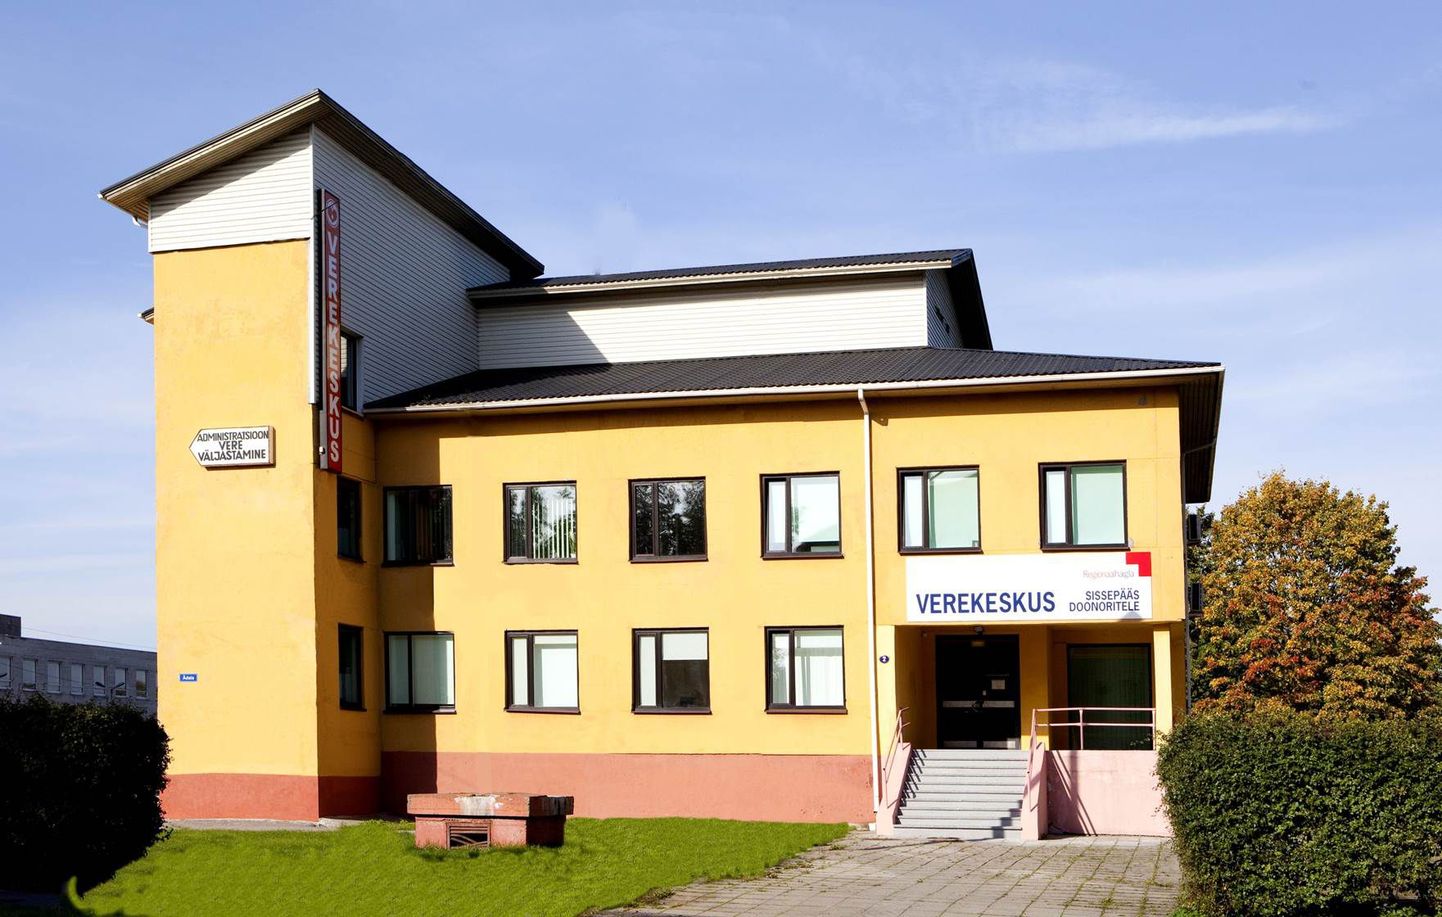 Põhja-Eesti regionaalhaigla verekeskus asub praegu Ädala tänaval.